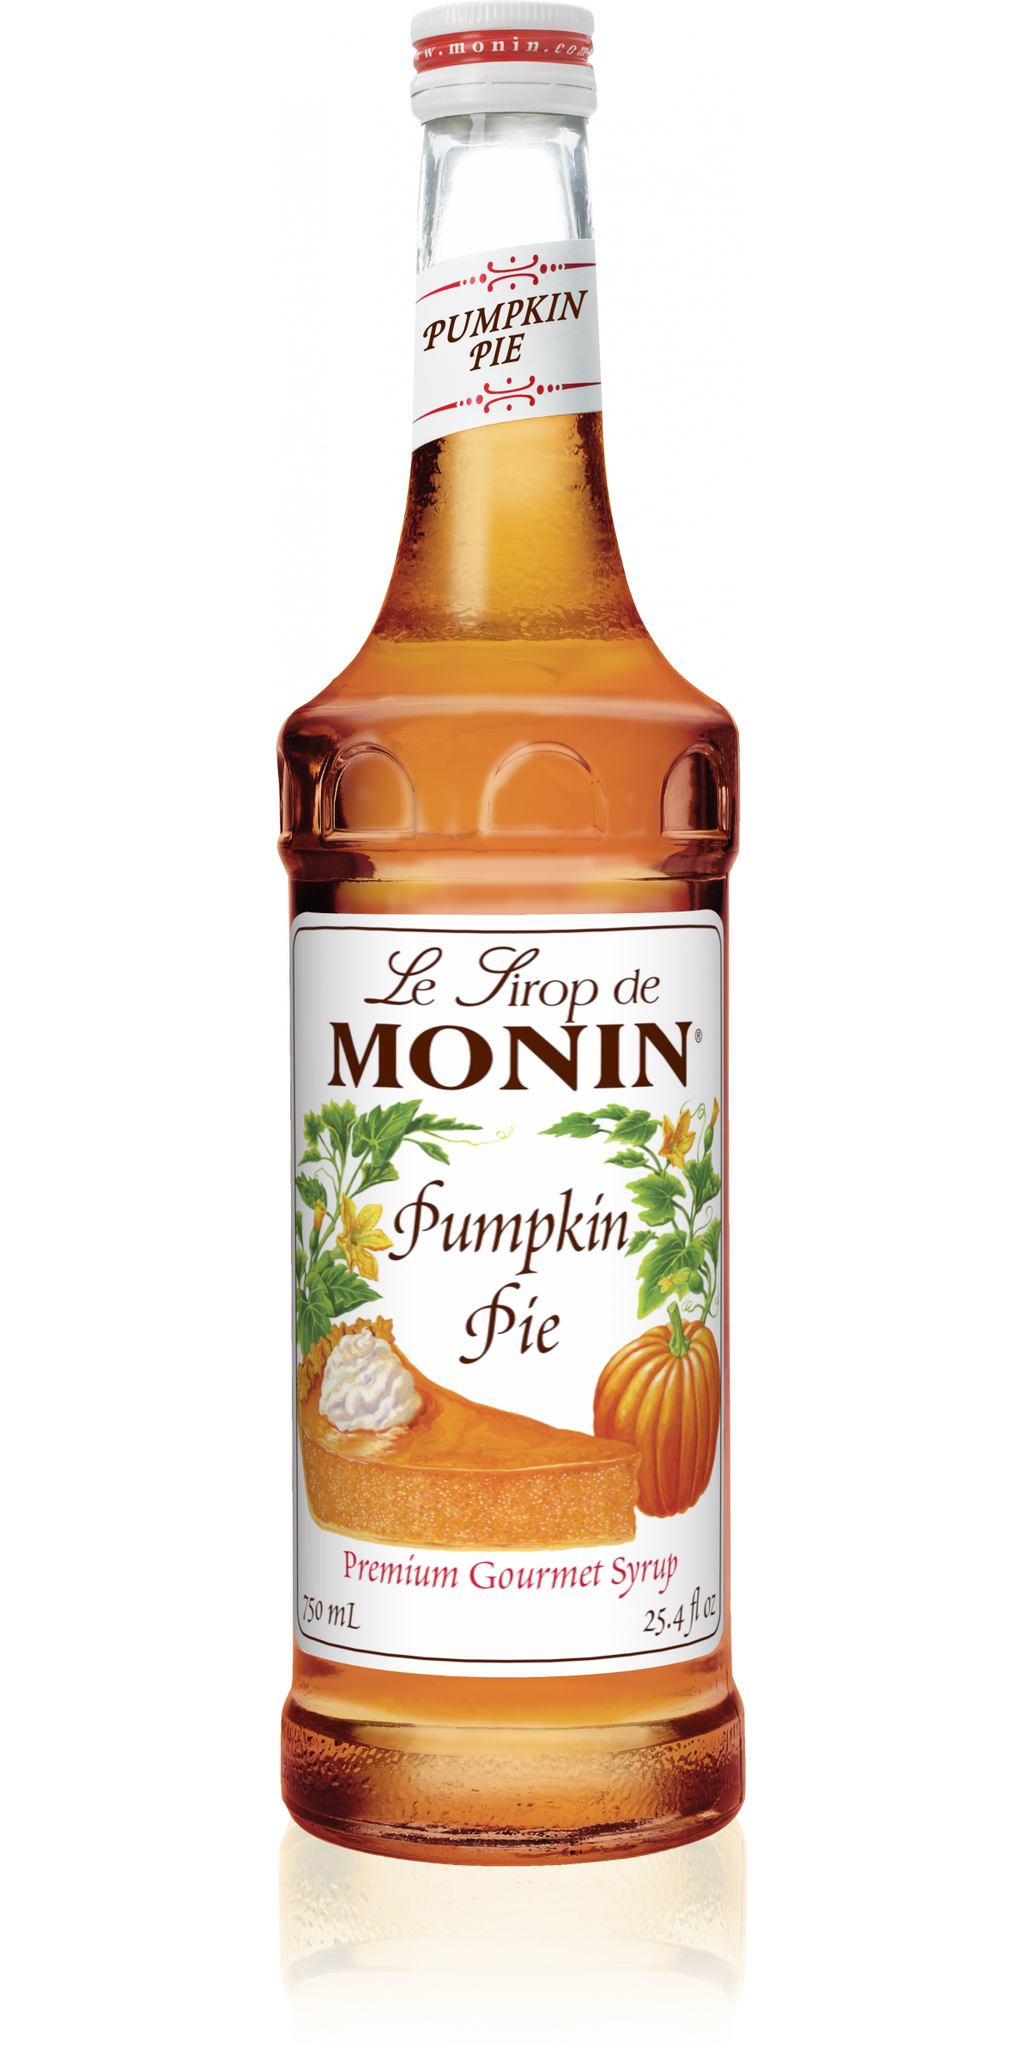 Monin Pumpkin Pie Syrup